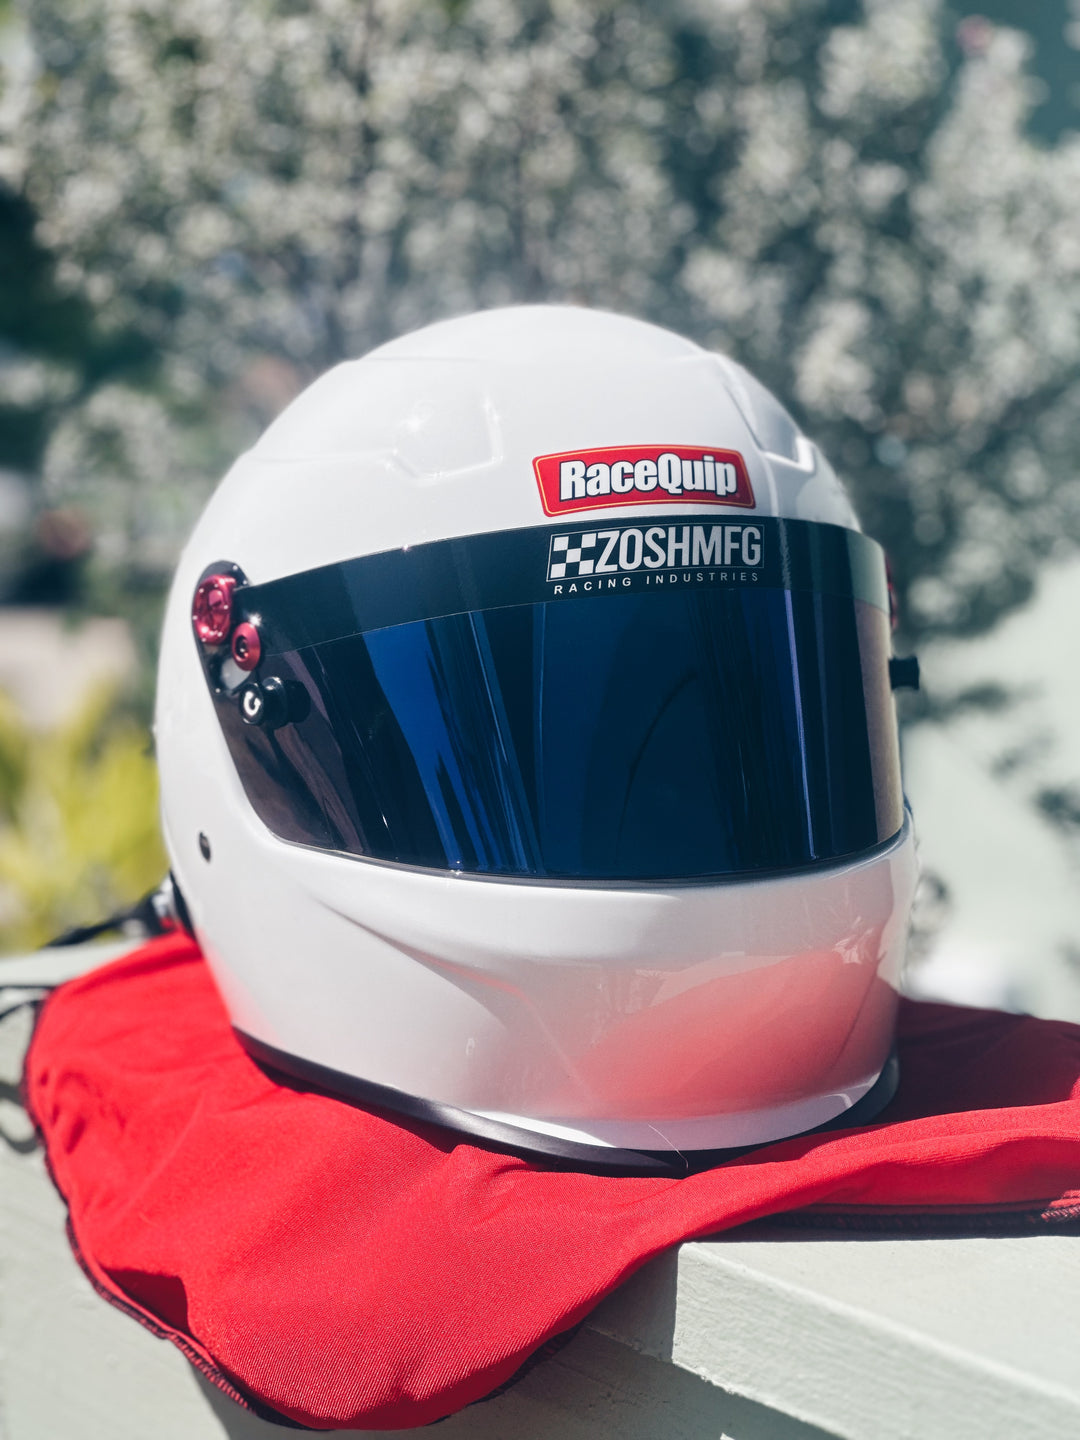 Racequip Racing Helmet